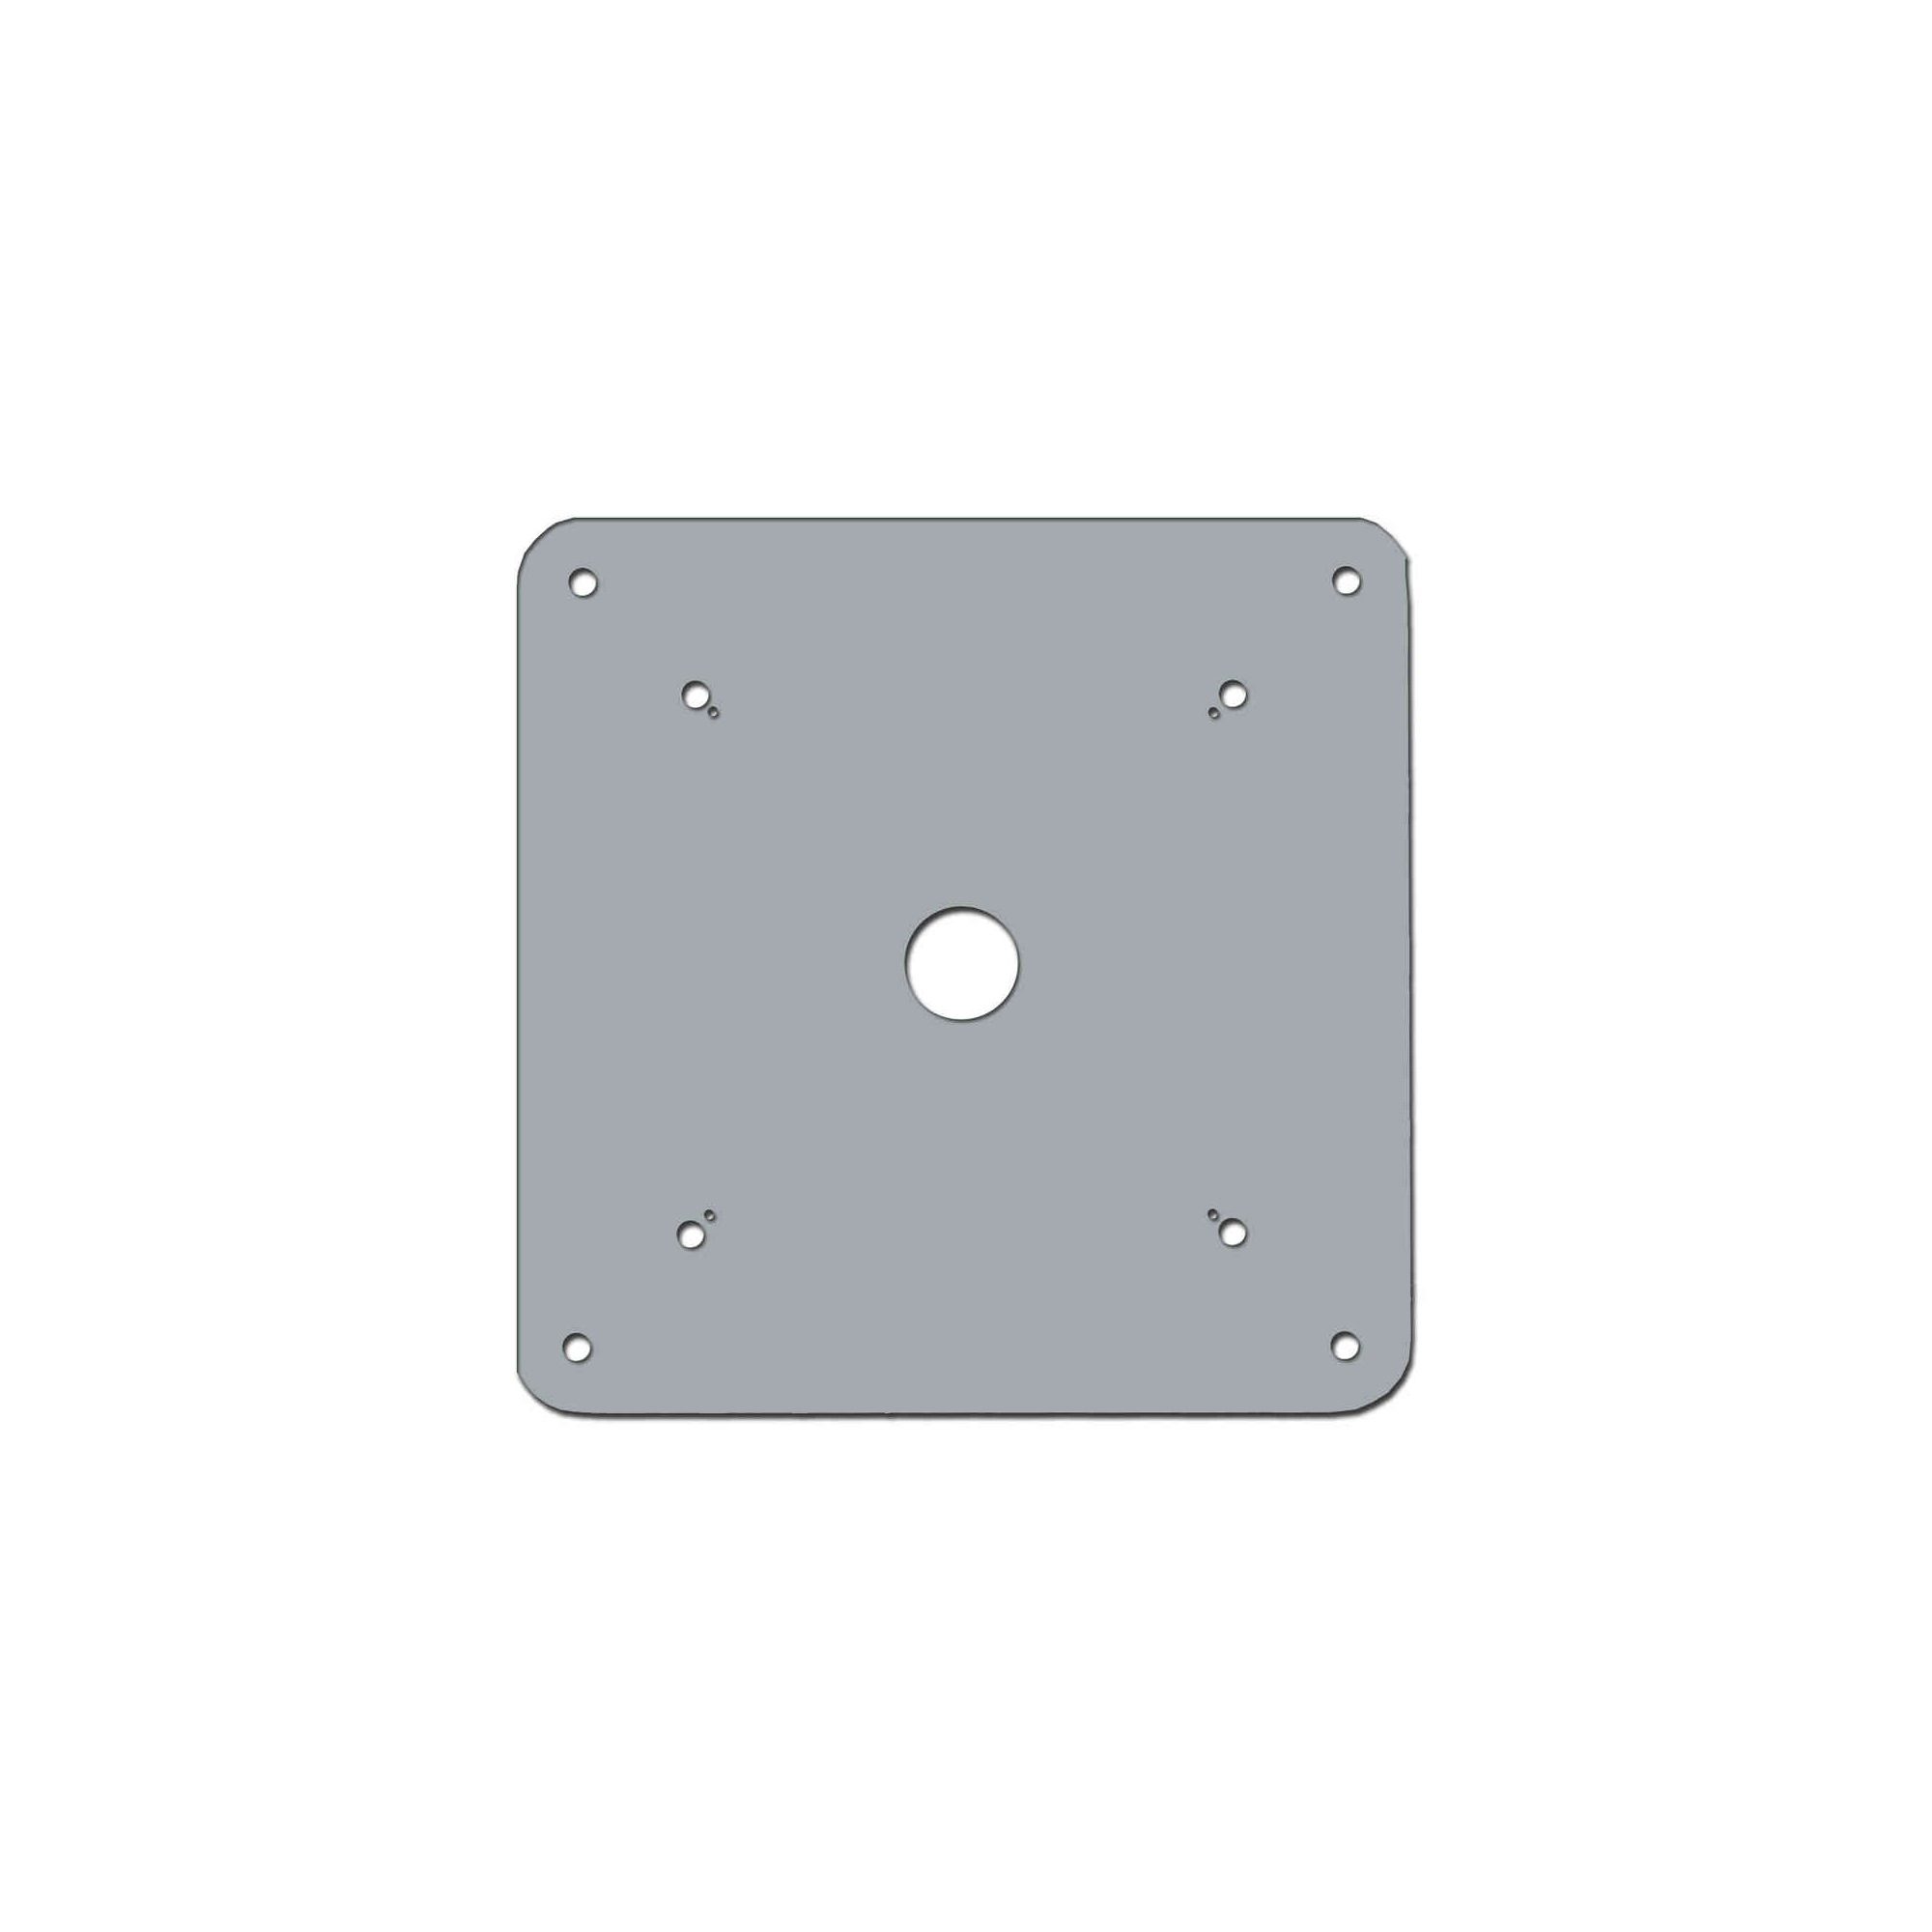 Piastra/base in acciaio zincato 49 x 49 cm per fissaggio a pavimento truss quadre lato 39 cm